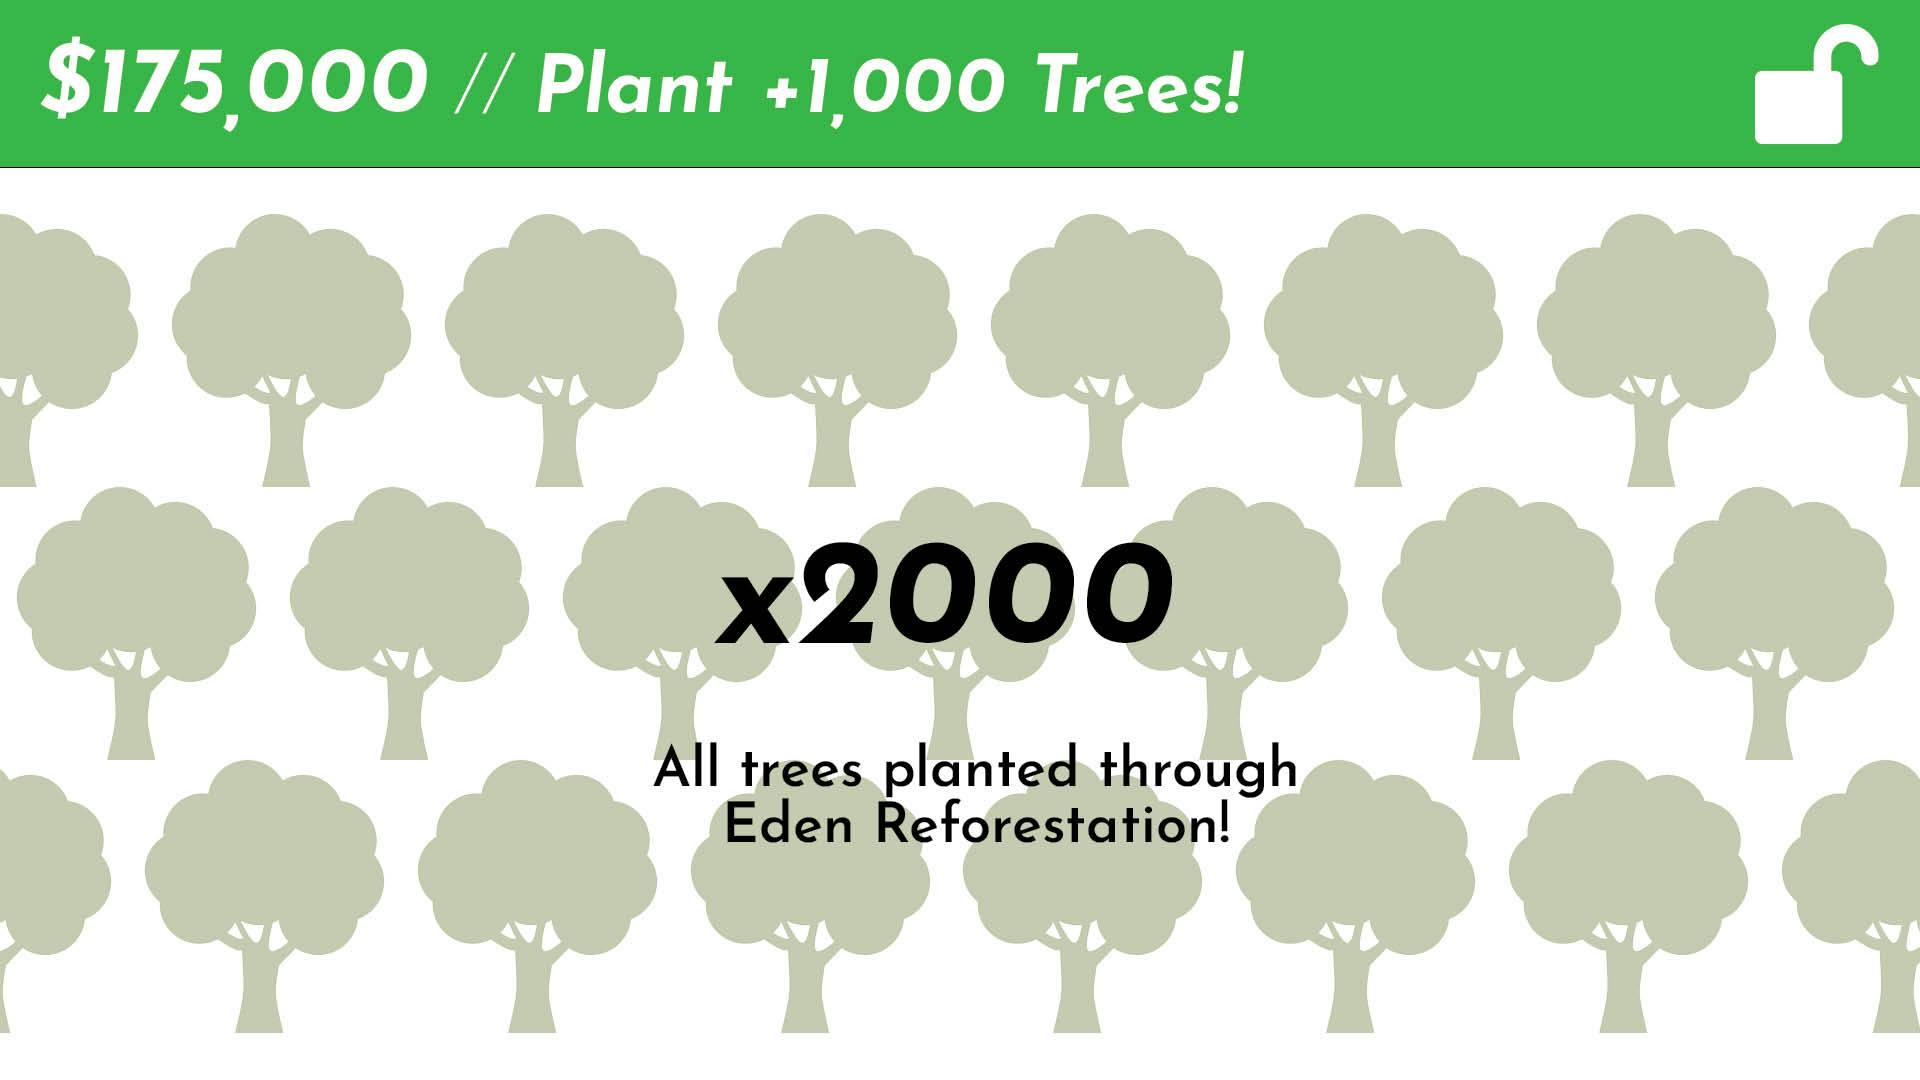 Plant 2,000 Trees